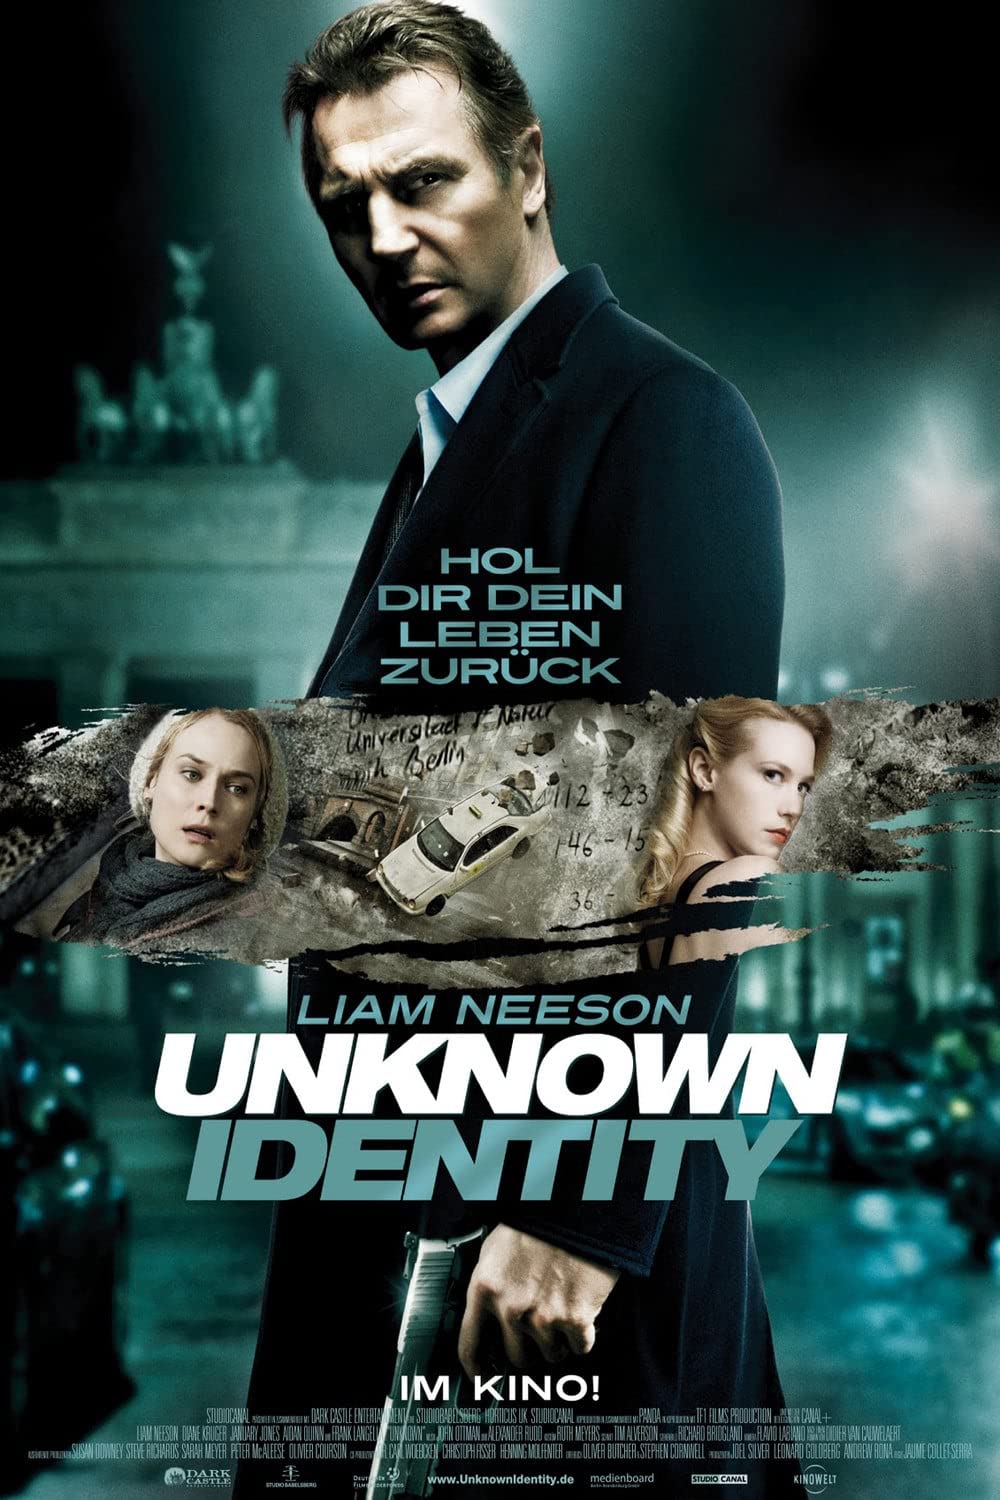 Filmbeschreibung zu Unknown Identity